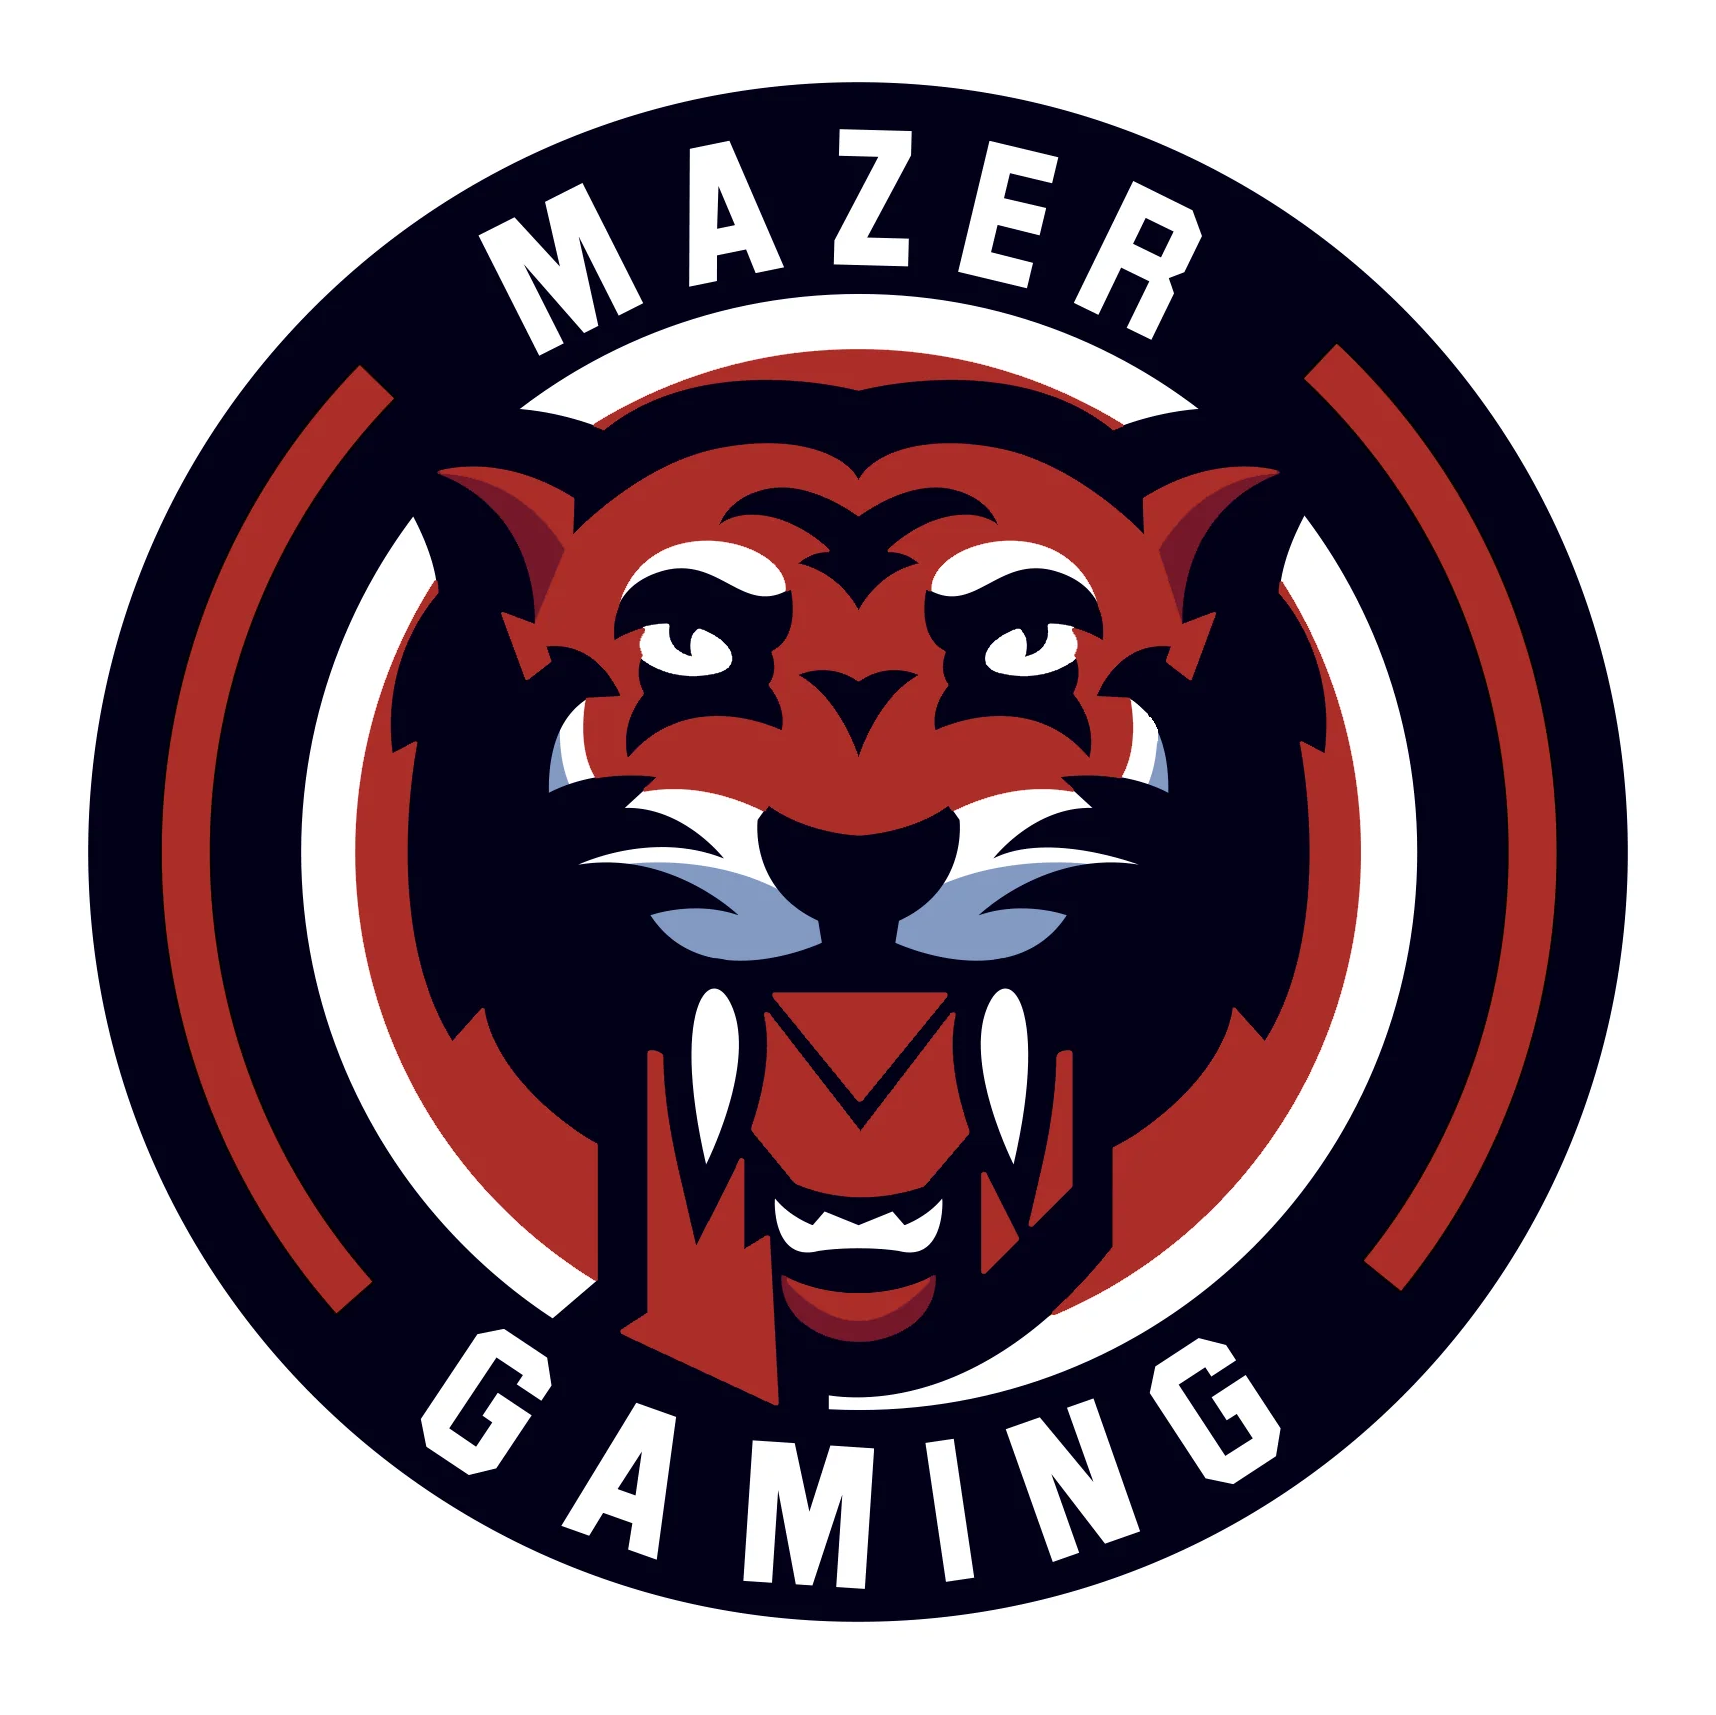 Mazer Gaming team logo